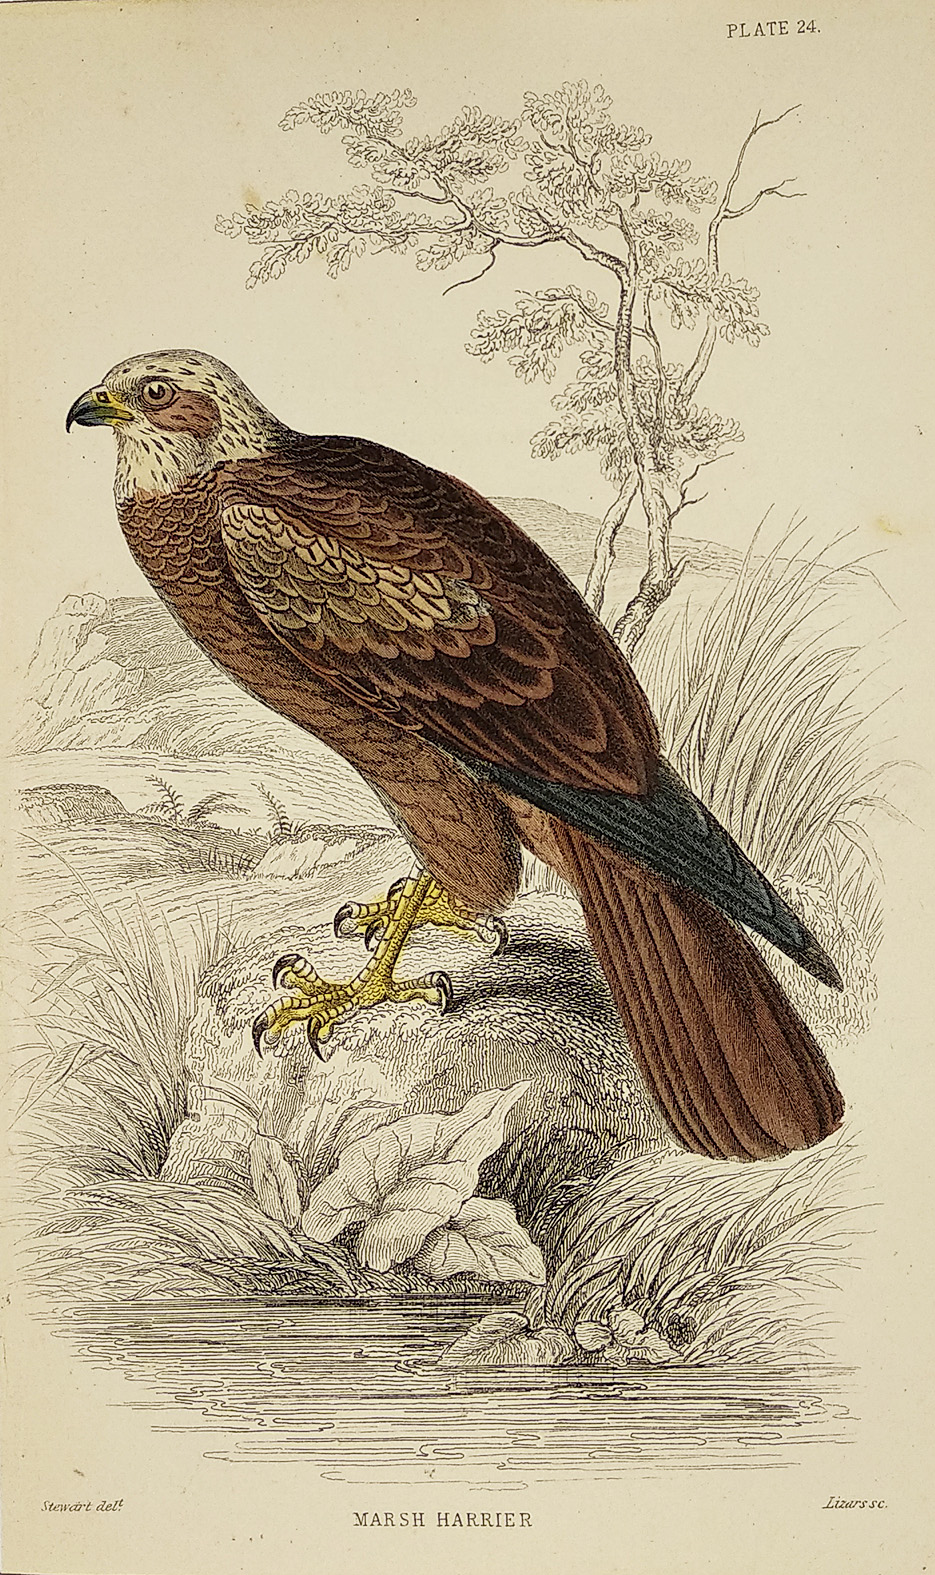 Marsh Harrier - Antique Print from 1834